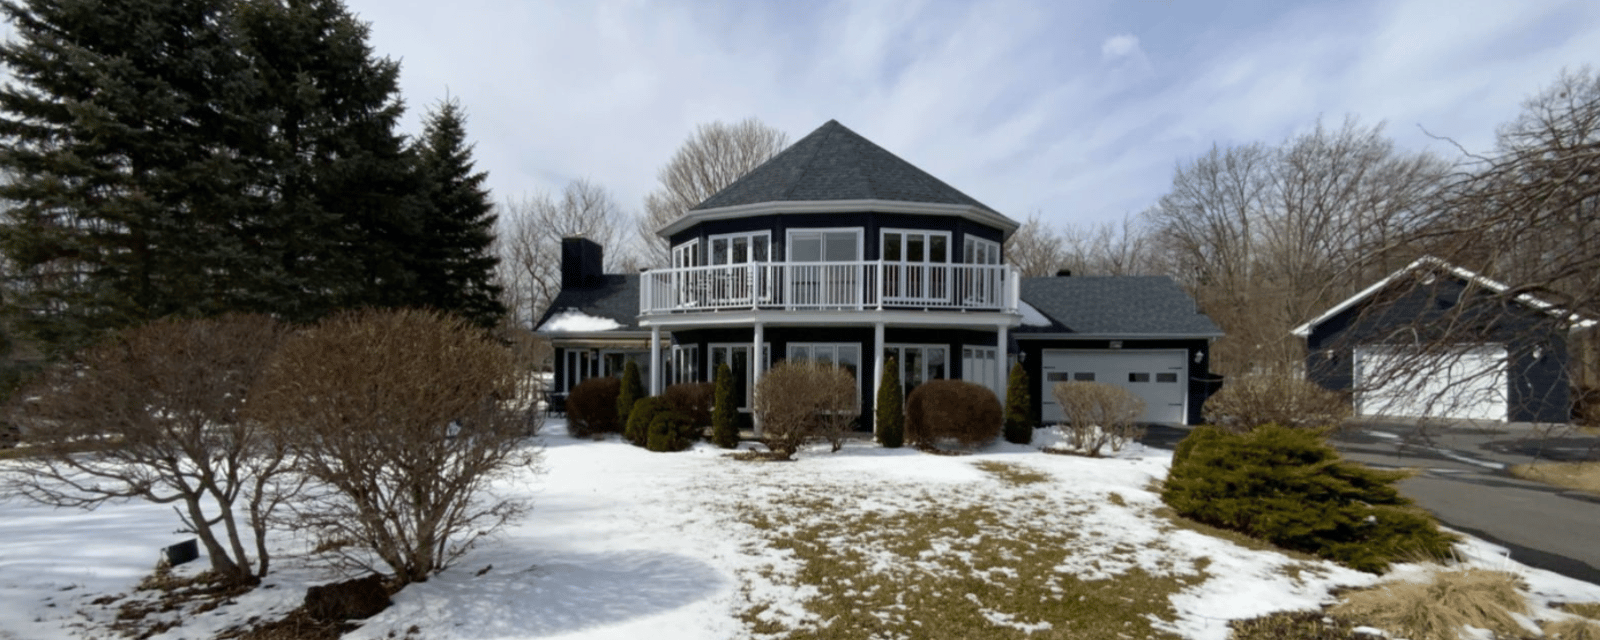 Magnifique maison située dans un paysage paradisiaque sur le bord du lac Champlain